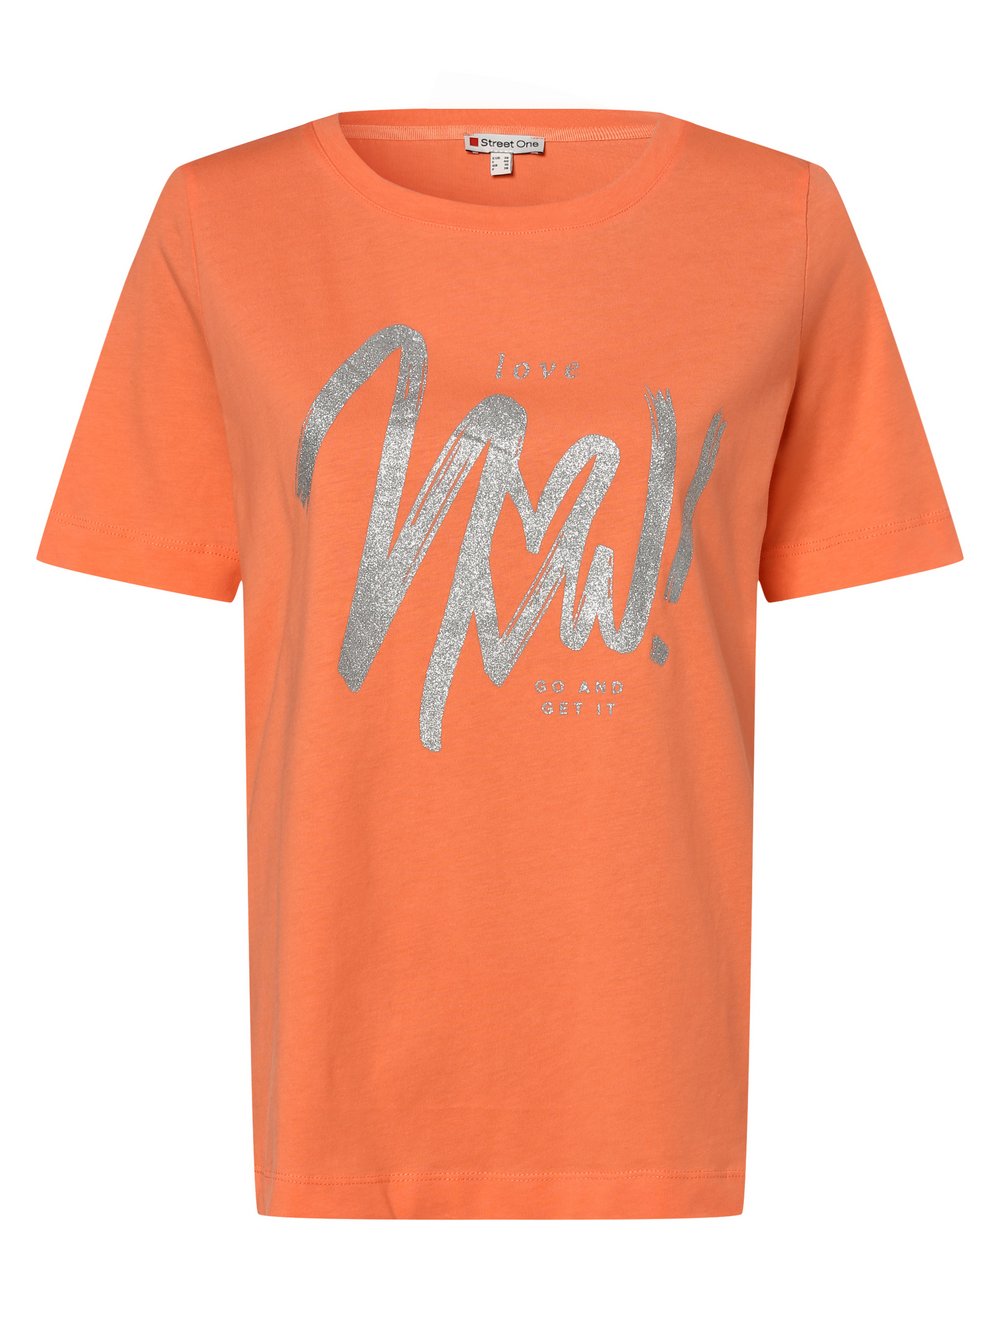 Street One - T-shirt damski, pomarańczowy